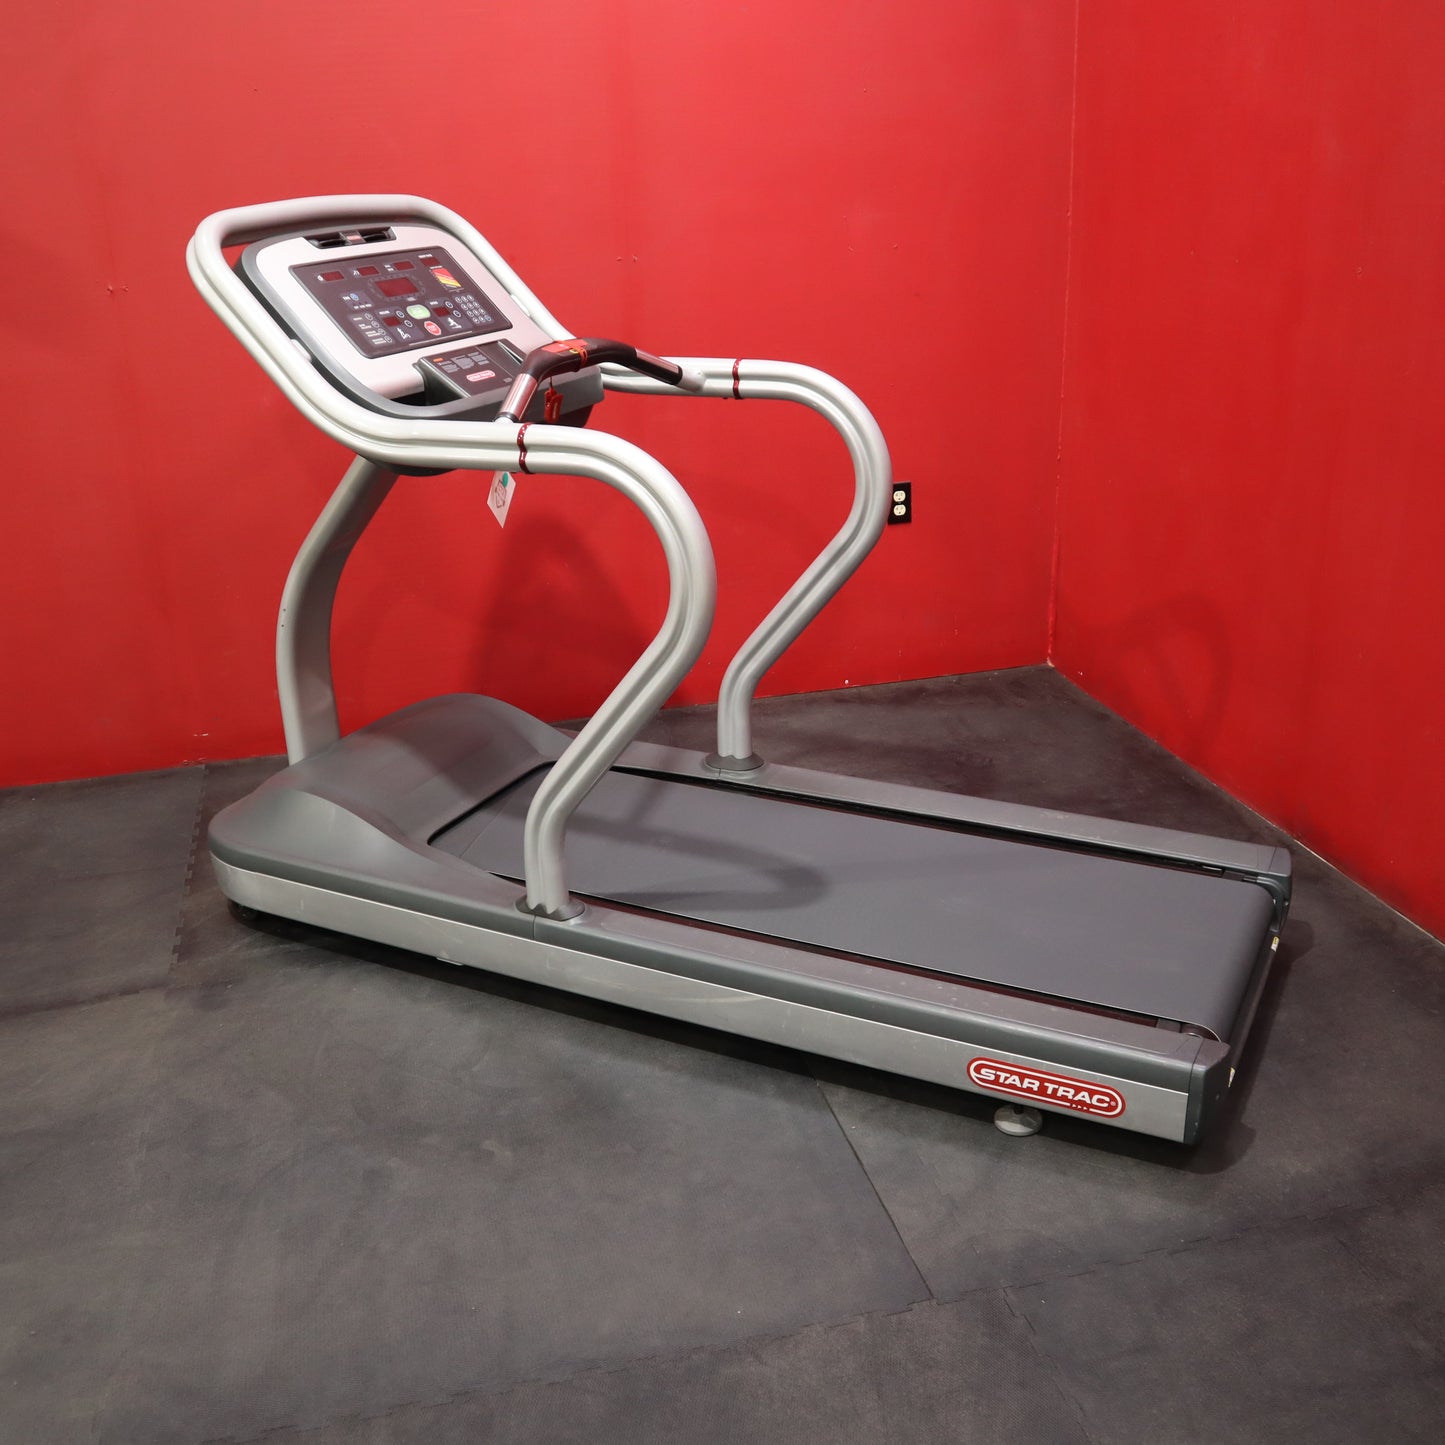 Star Trac S-TRx Treadmill (Refurbished)